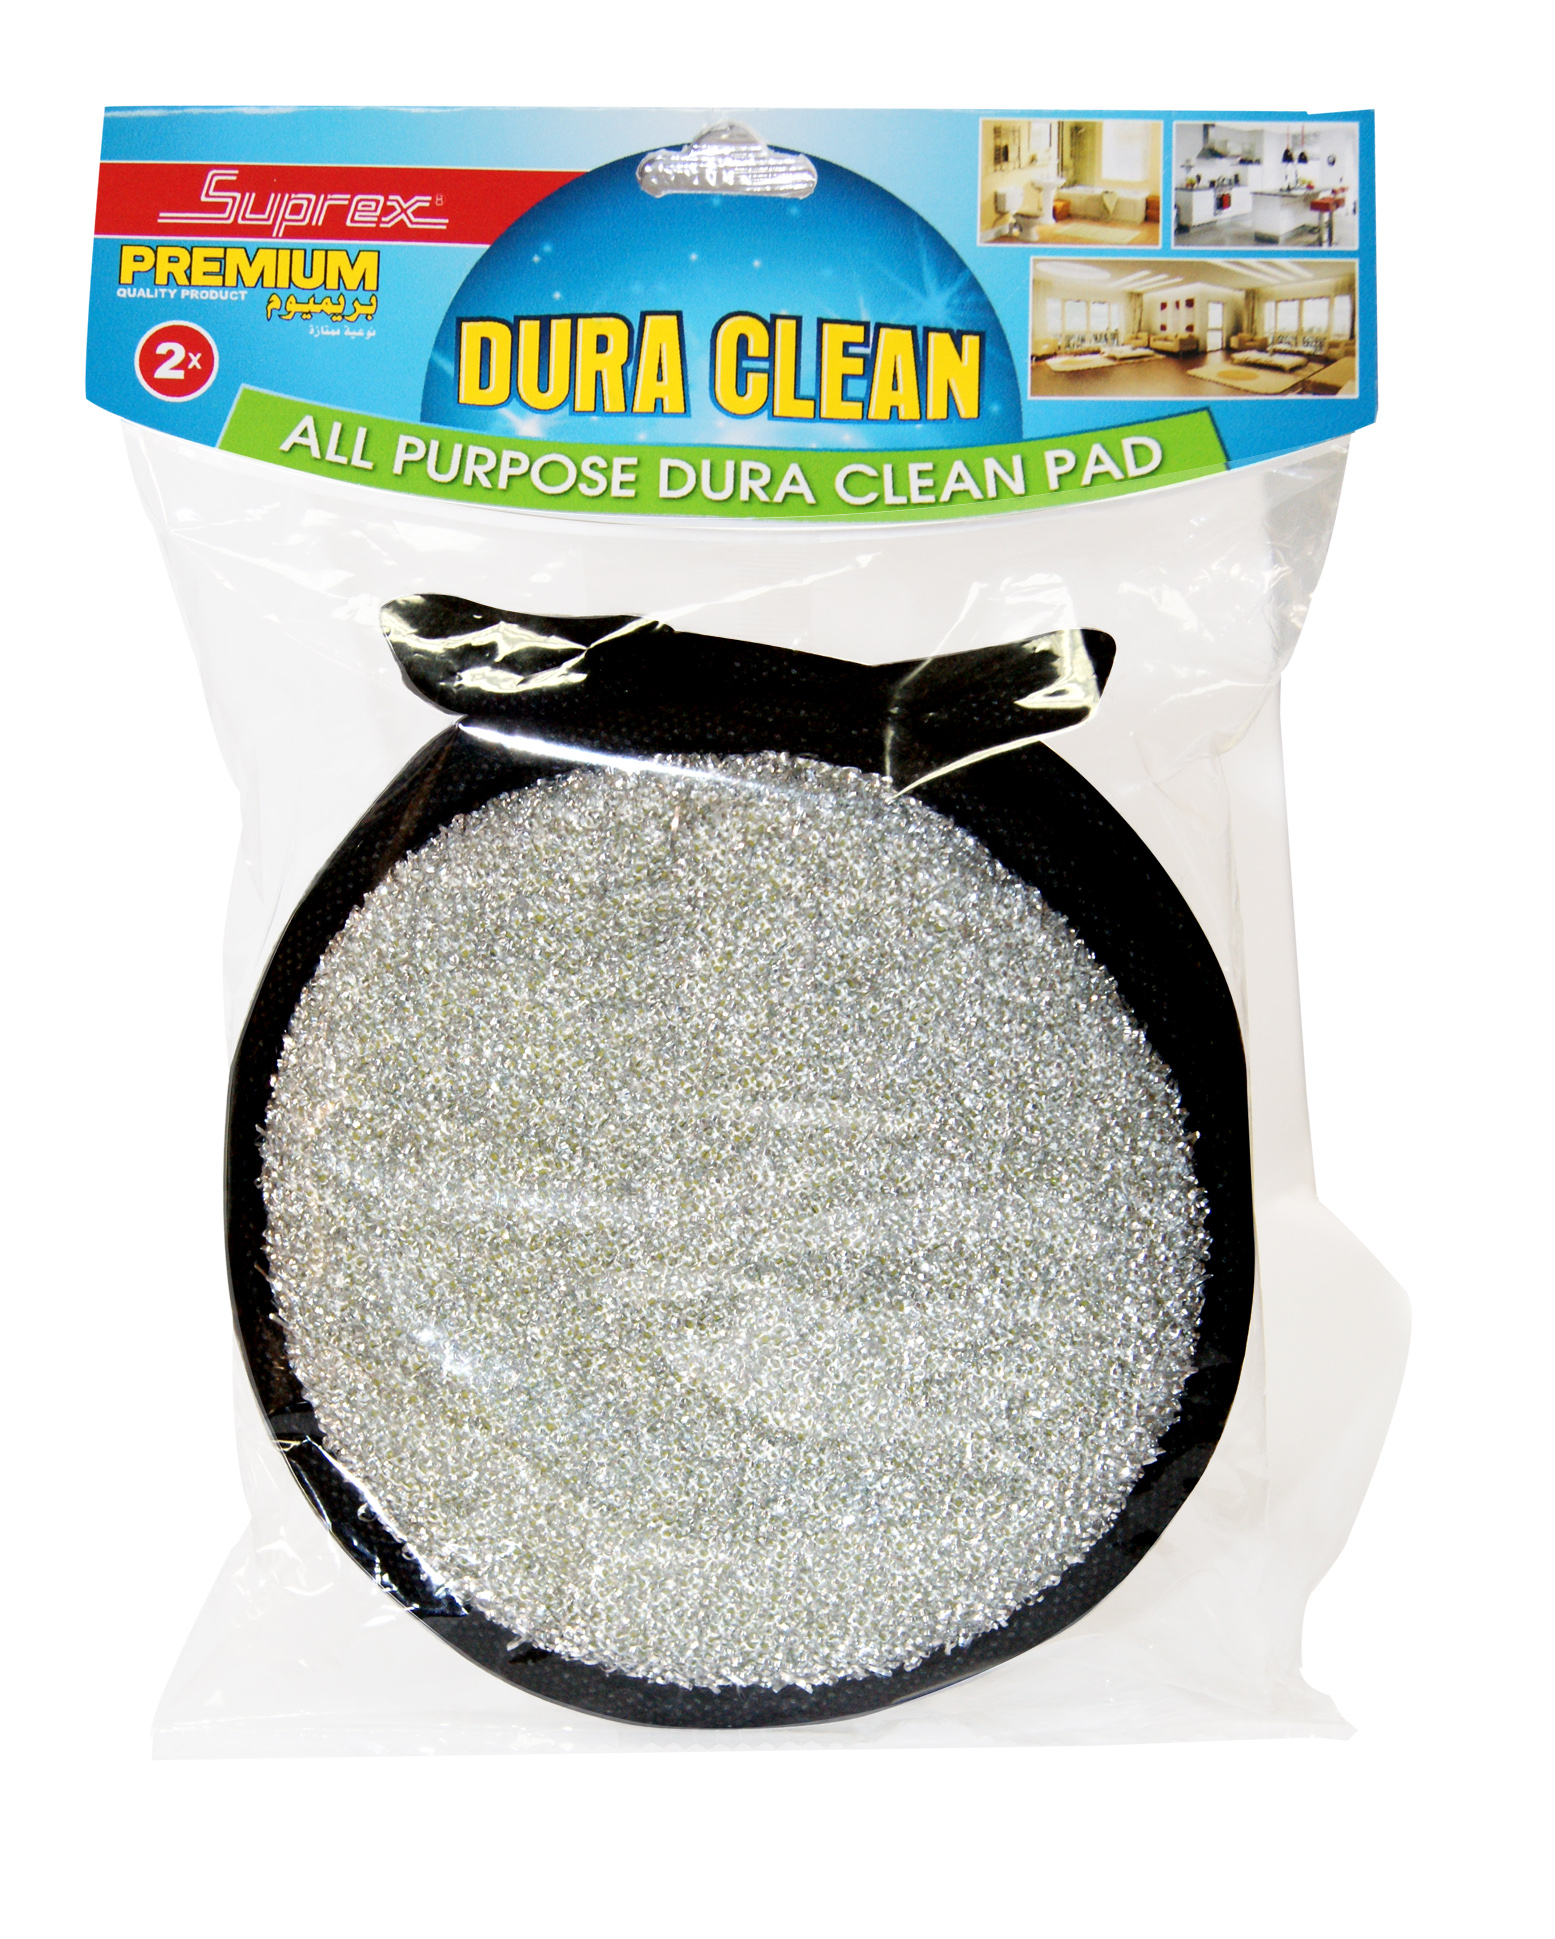 Dura Clean (All Purpose Dura Clean Pad)